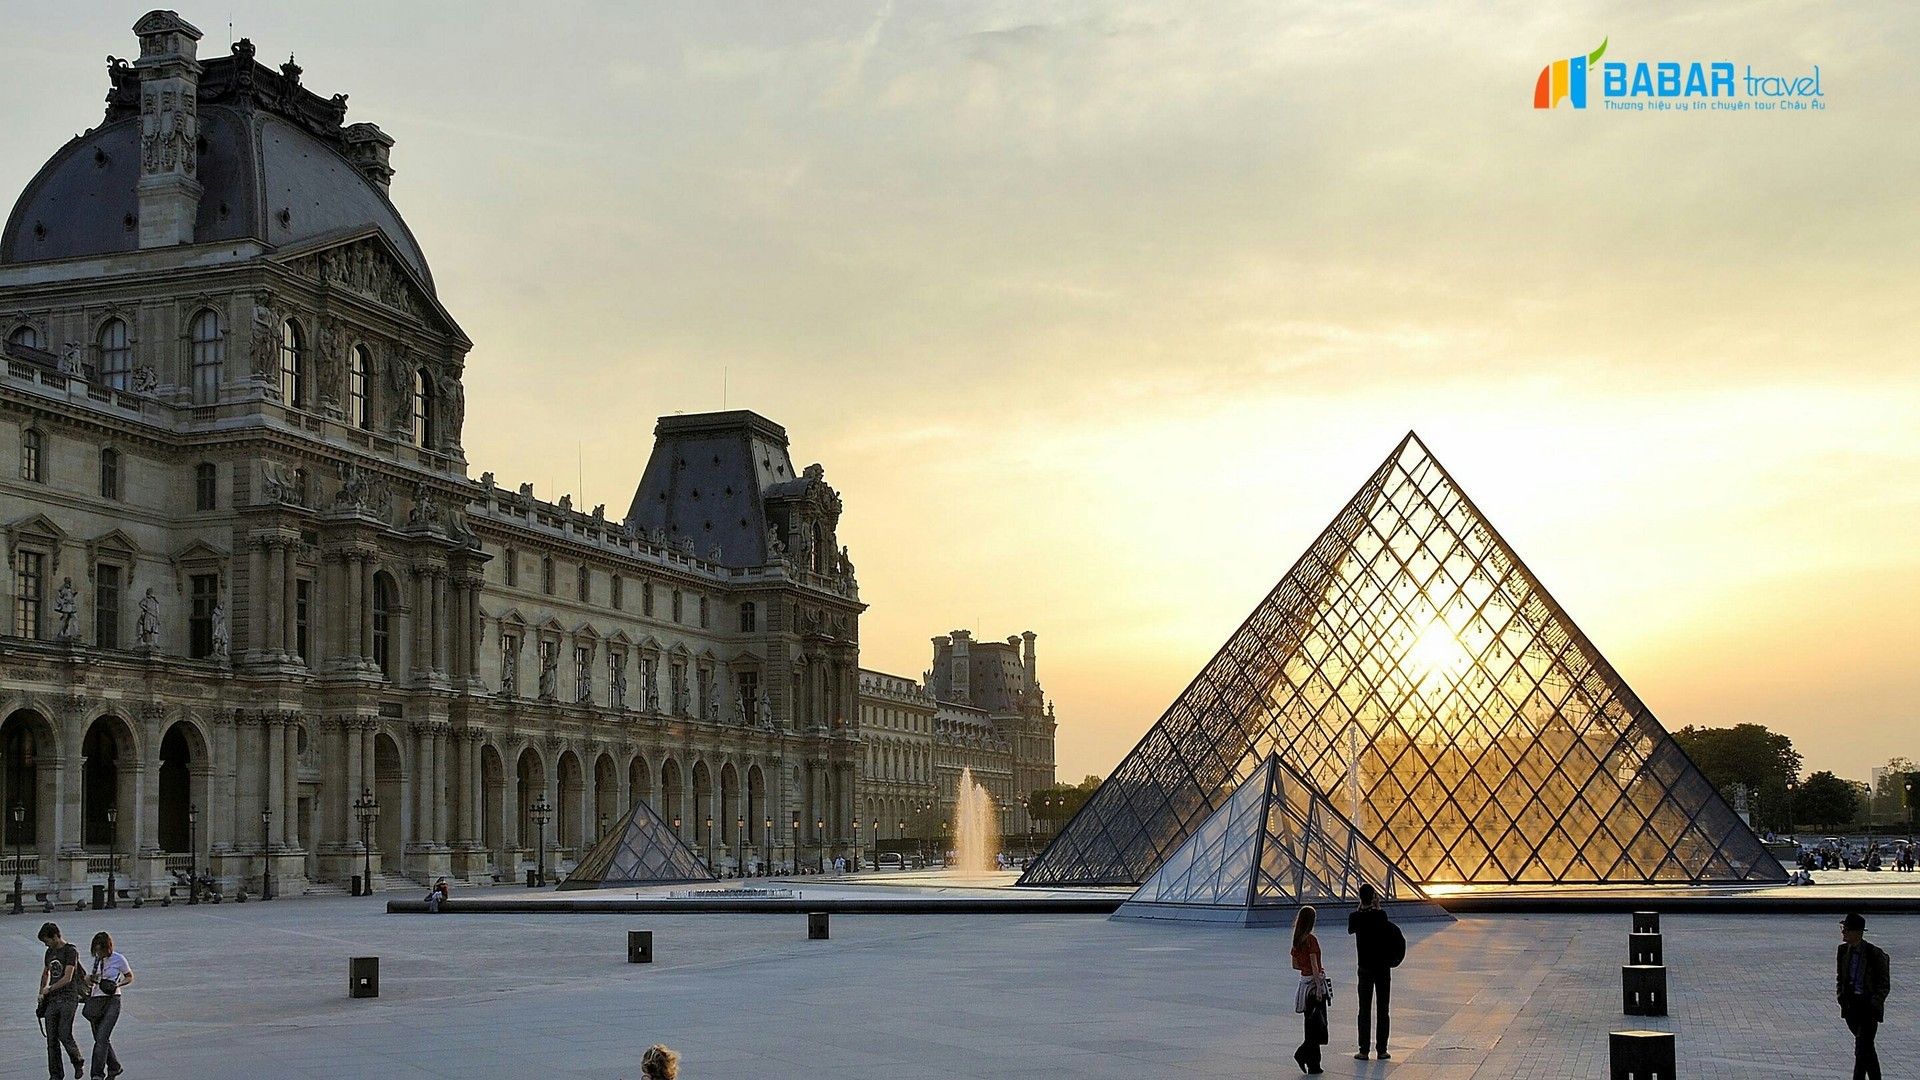 Kim Tự Tháp Louvre – Kim tự tháp “phát sáng” của thủ đô Paris